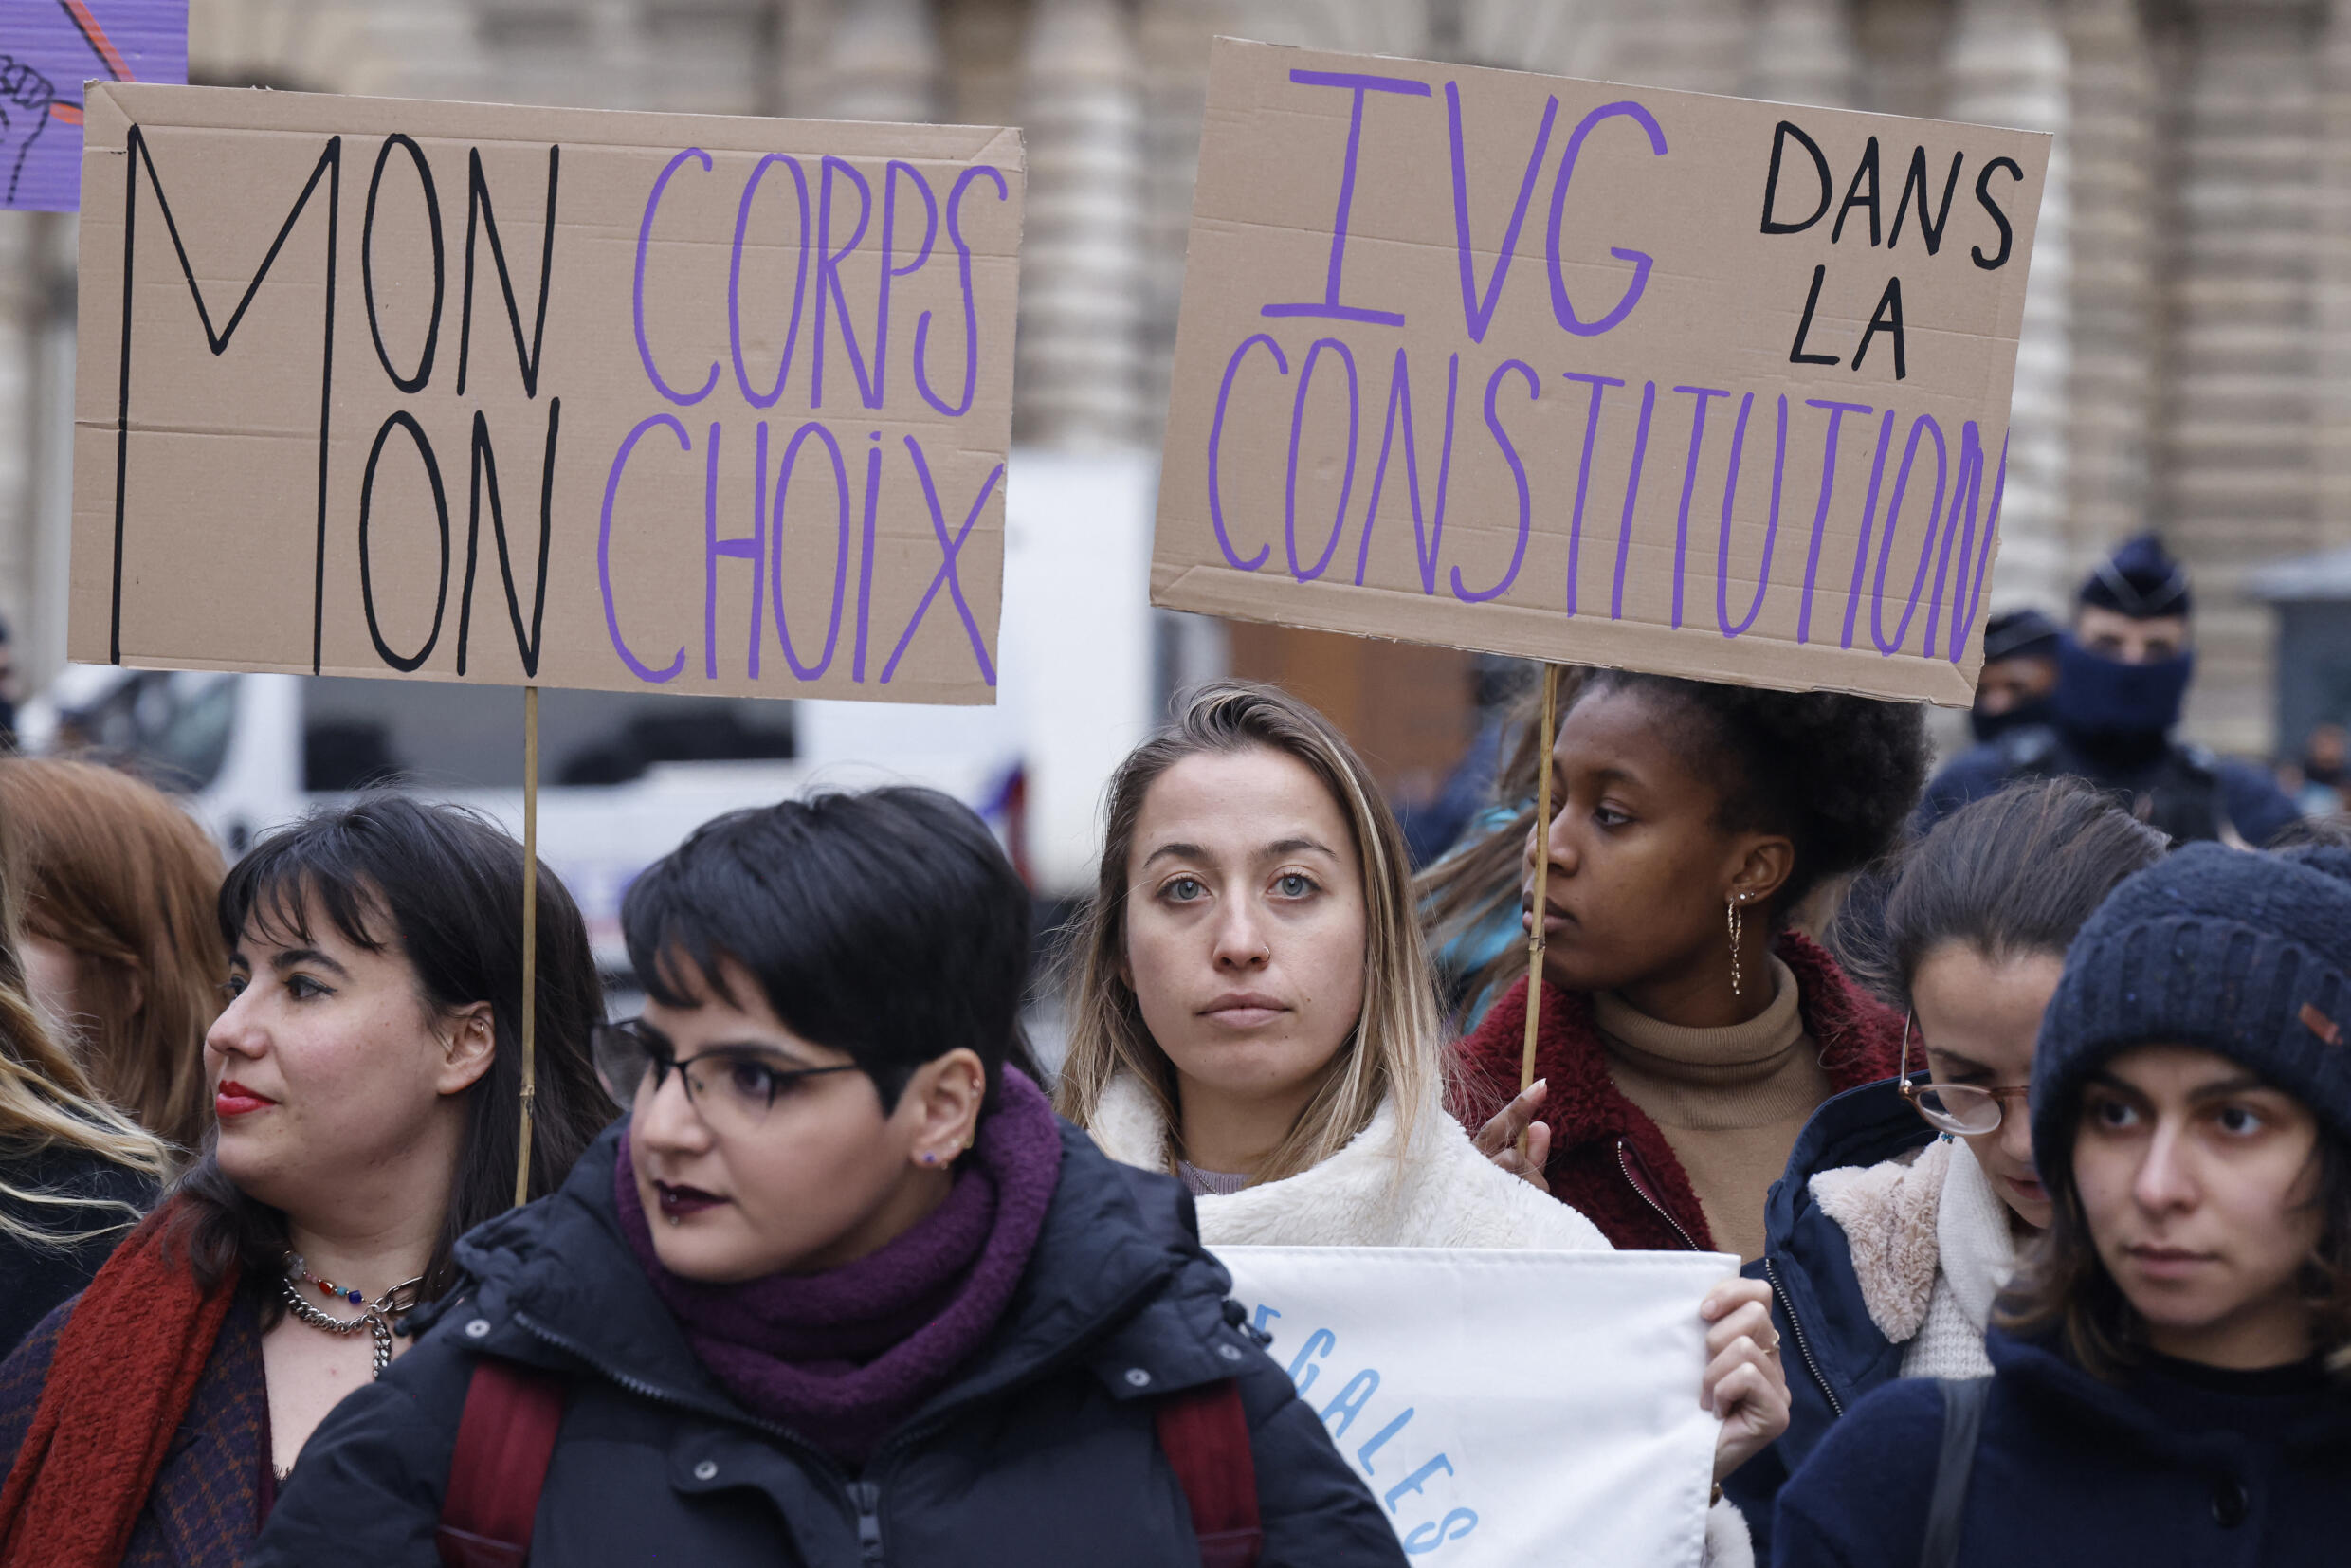 Plakate gelesen "Mein Körper ist meine Wahl" (Land "Abtreibung in der Verfassung" bei einer Kundgebung vor dem Senat in Paris, 1. Februar 2023. 